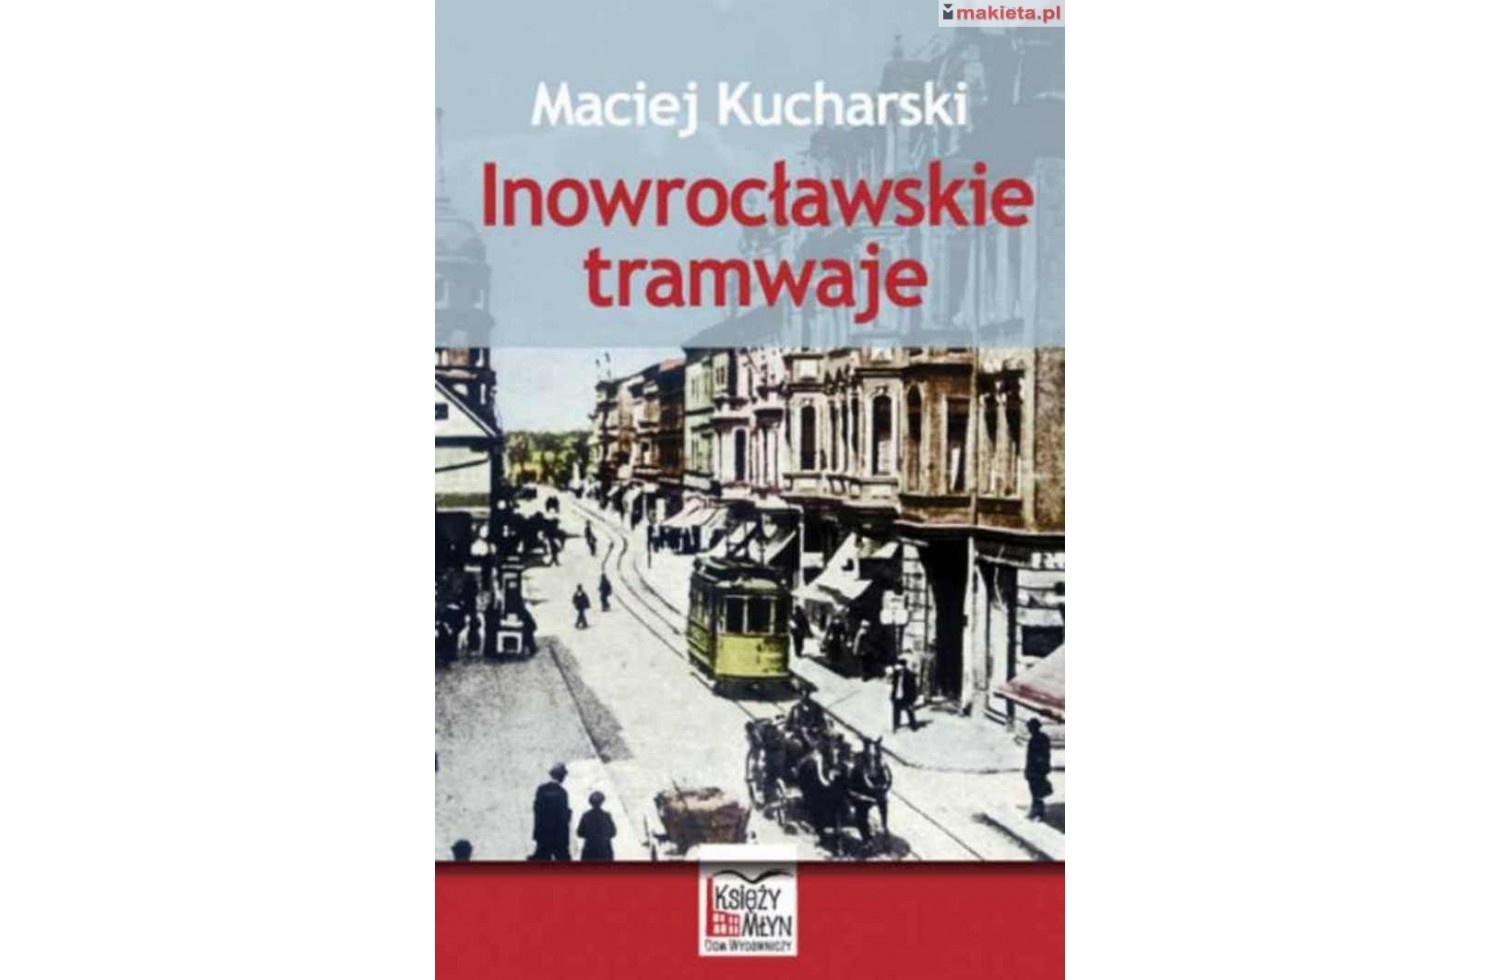 KM6IT  "Inowrocławskie tramwaje" Maciej Kucharski